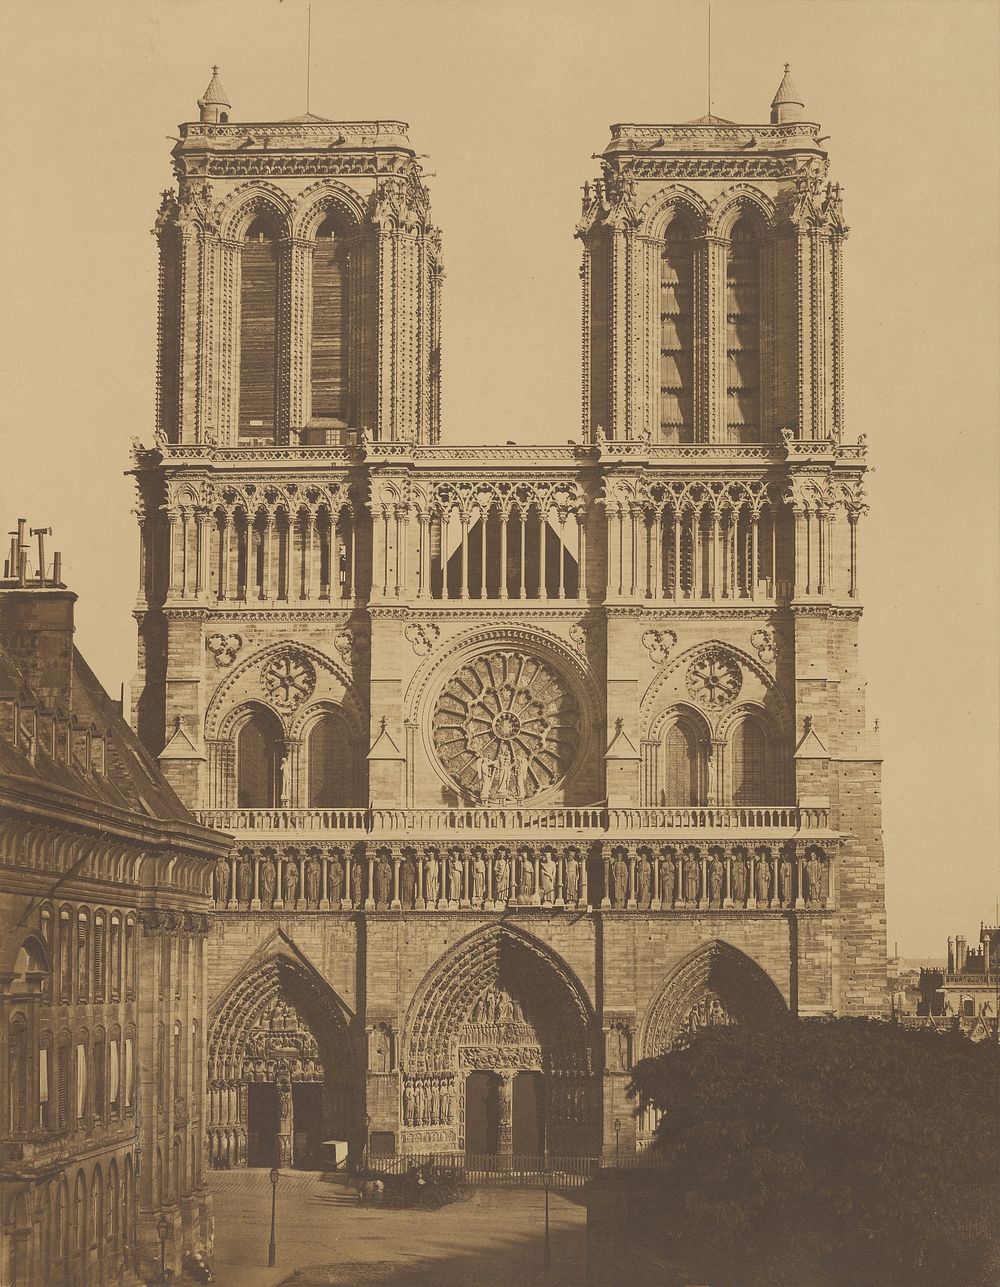 Notre-Dame de Paris by Édouard Baldus